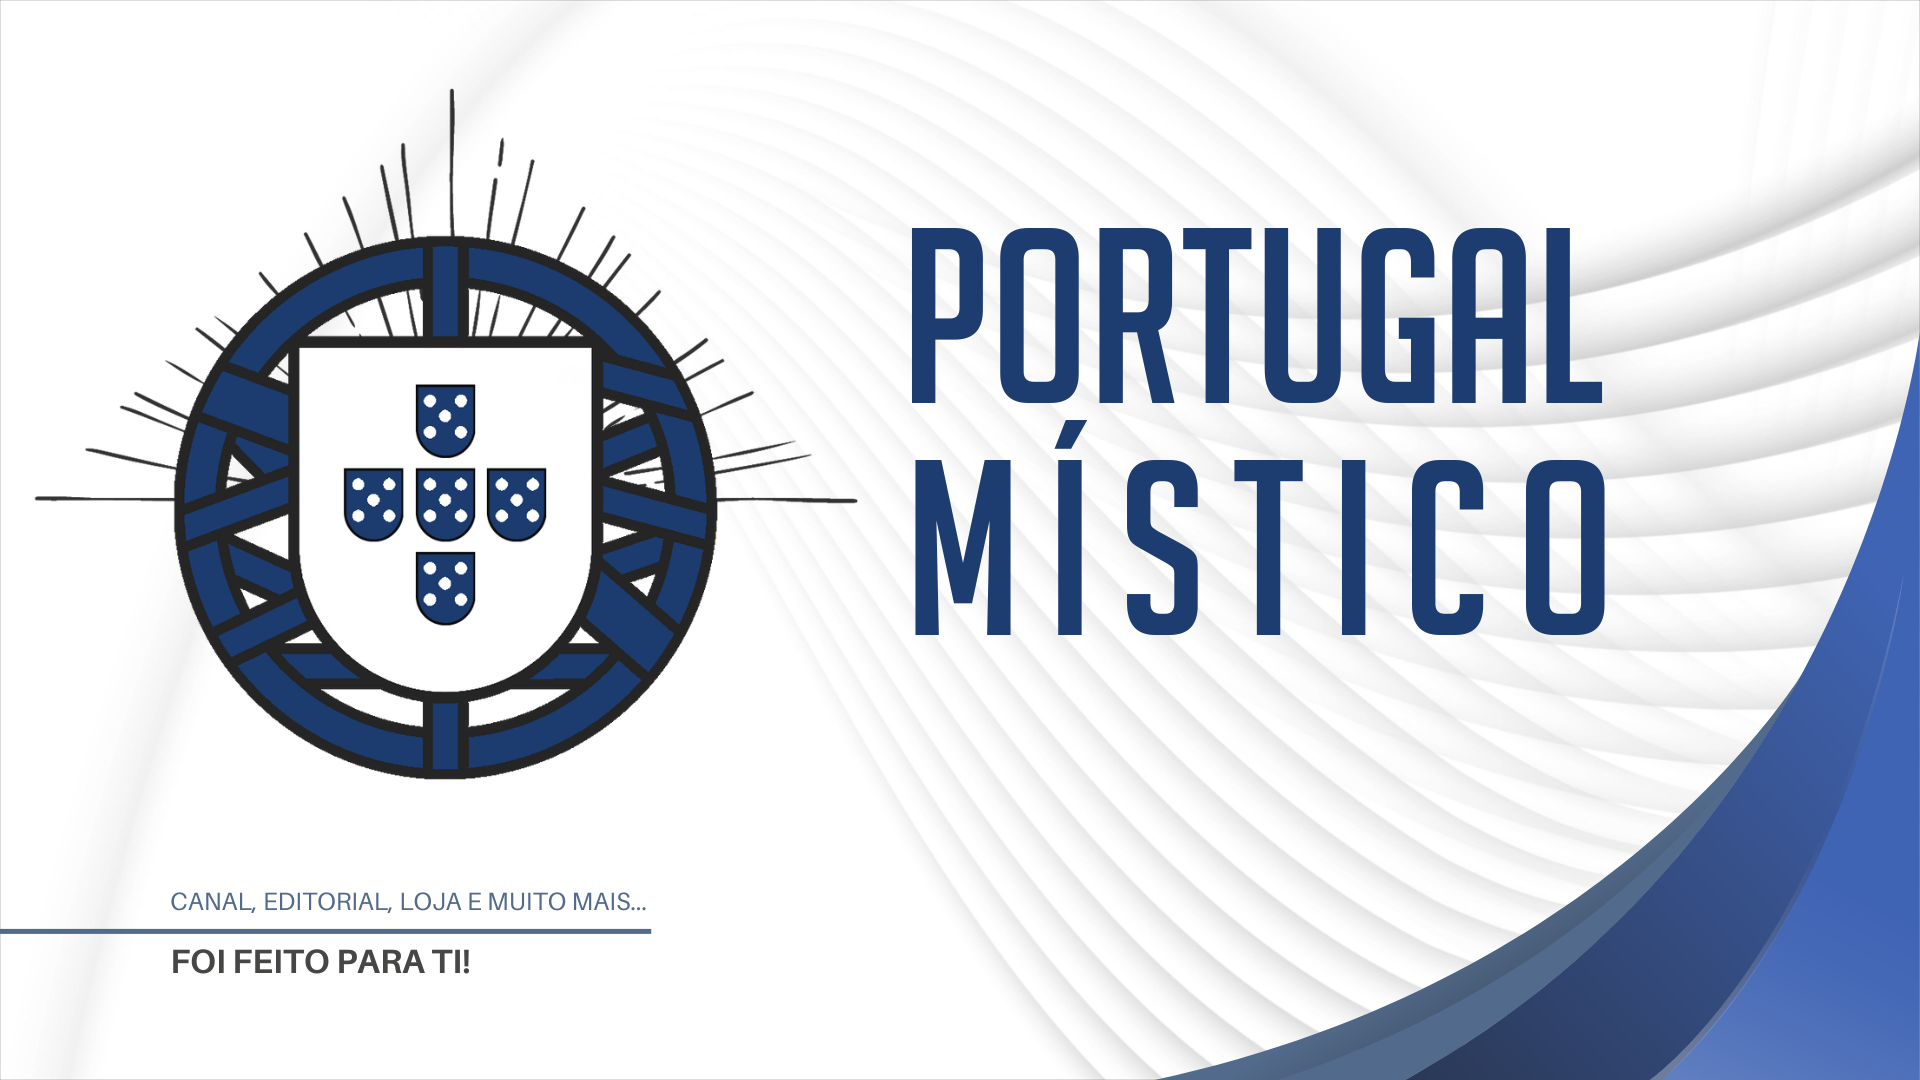 (c) Portugalmistico.com